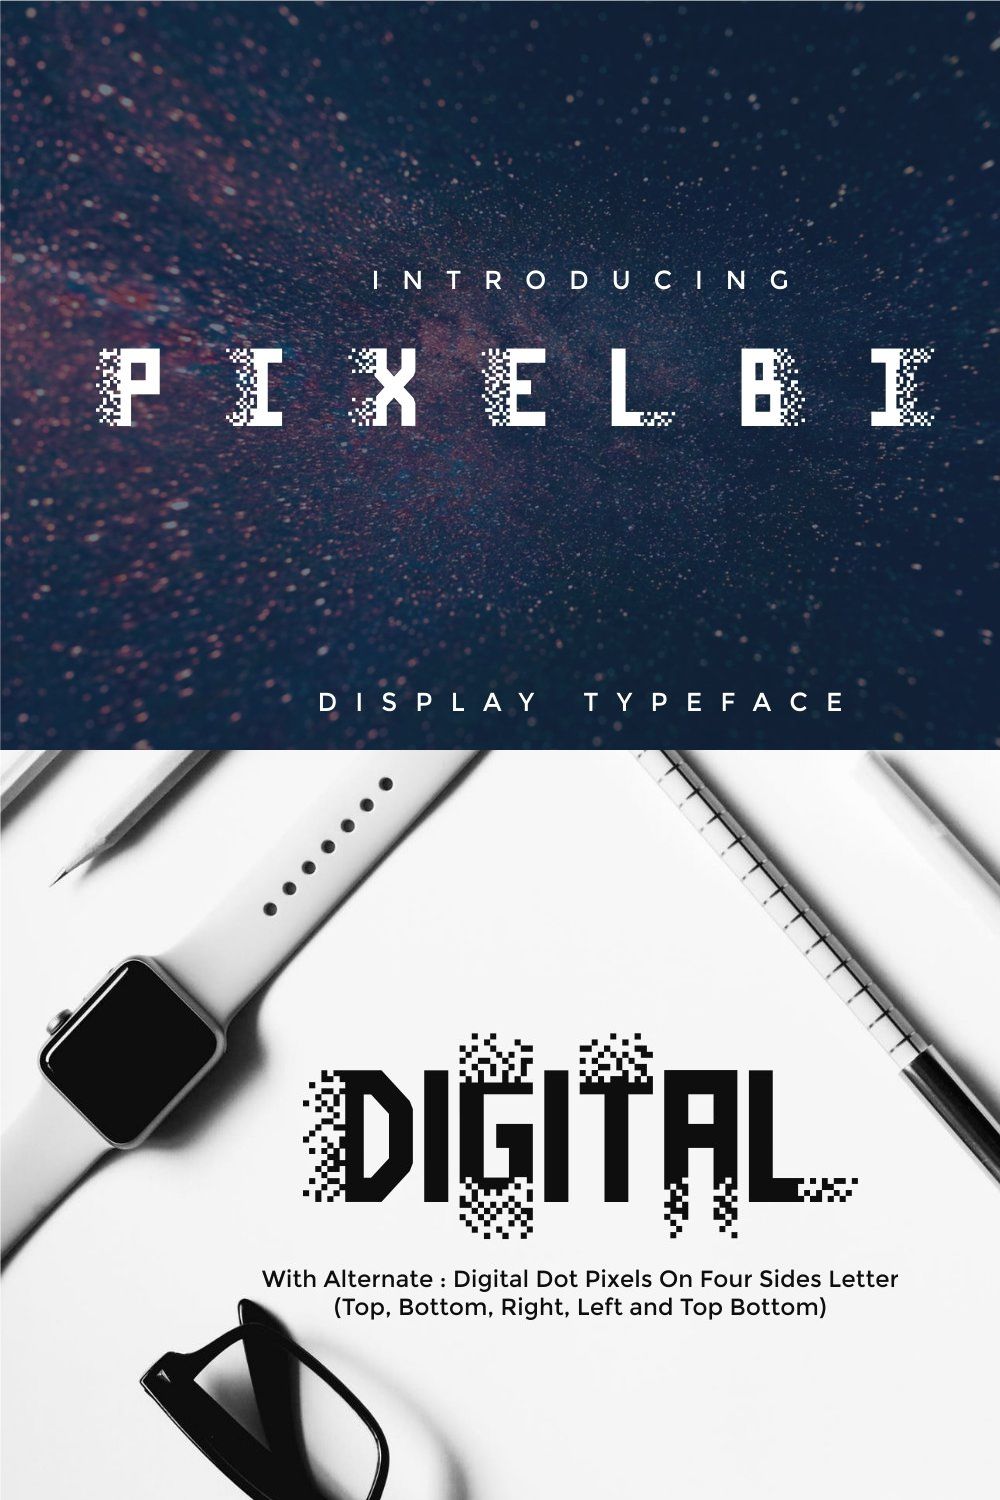 Pixel Bit Typeface pinterest preview image.